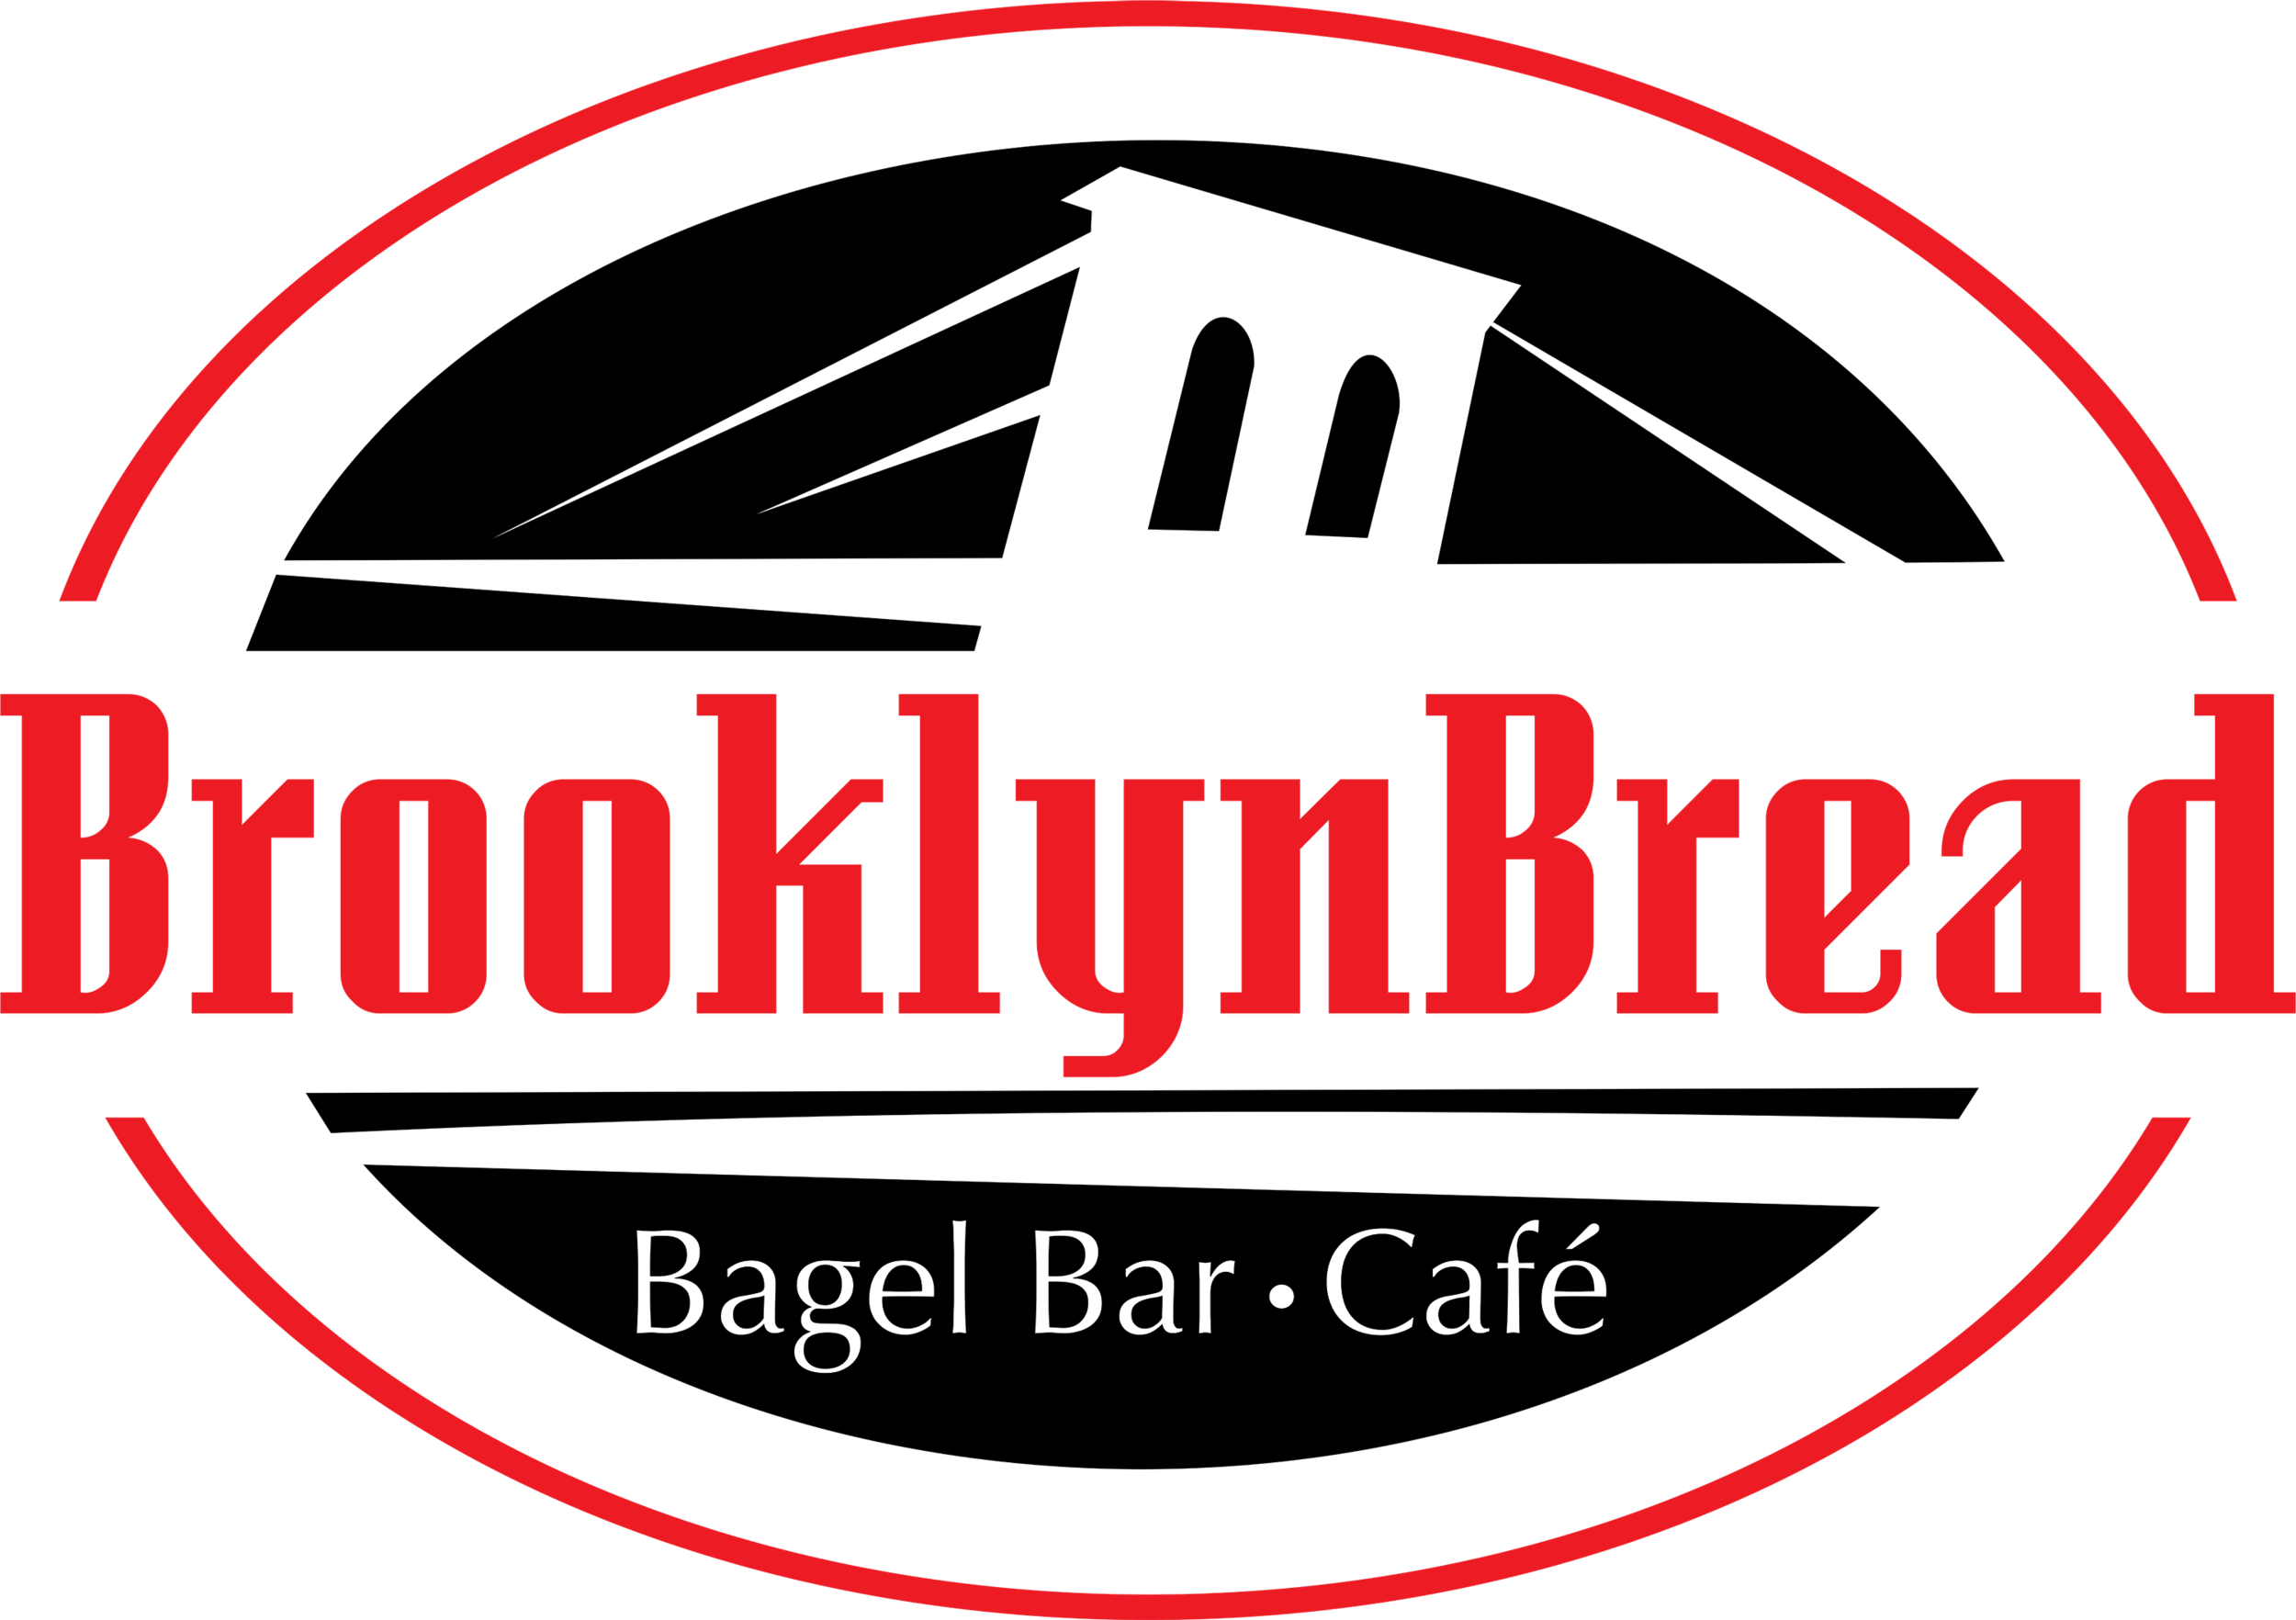 BROOKLYN BREAD CAFE